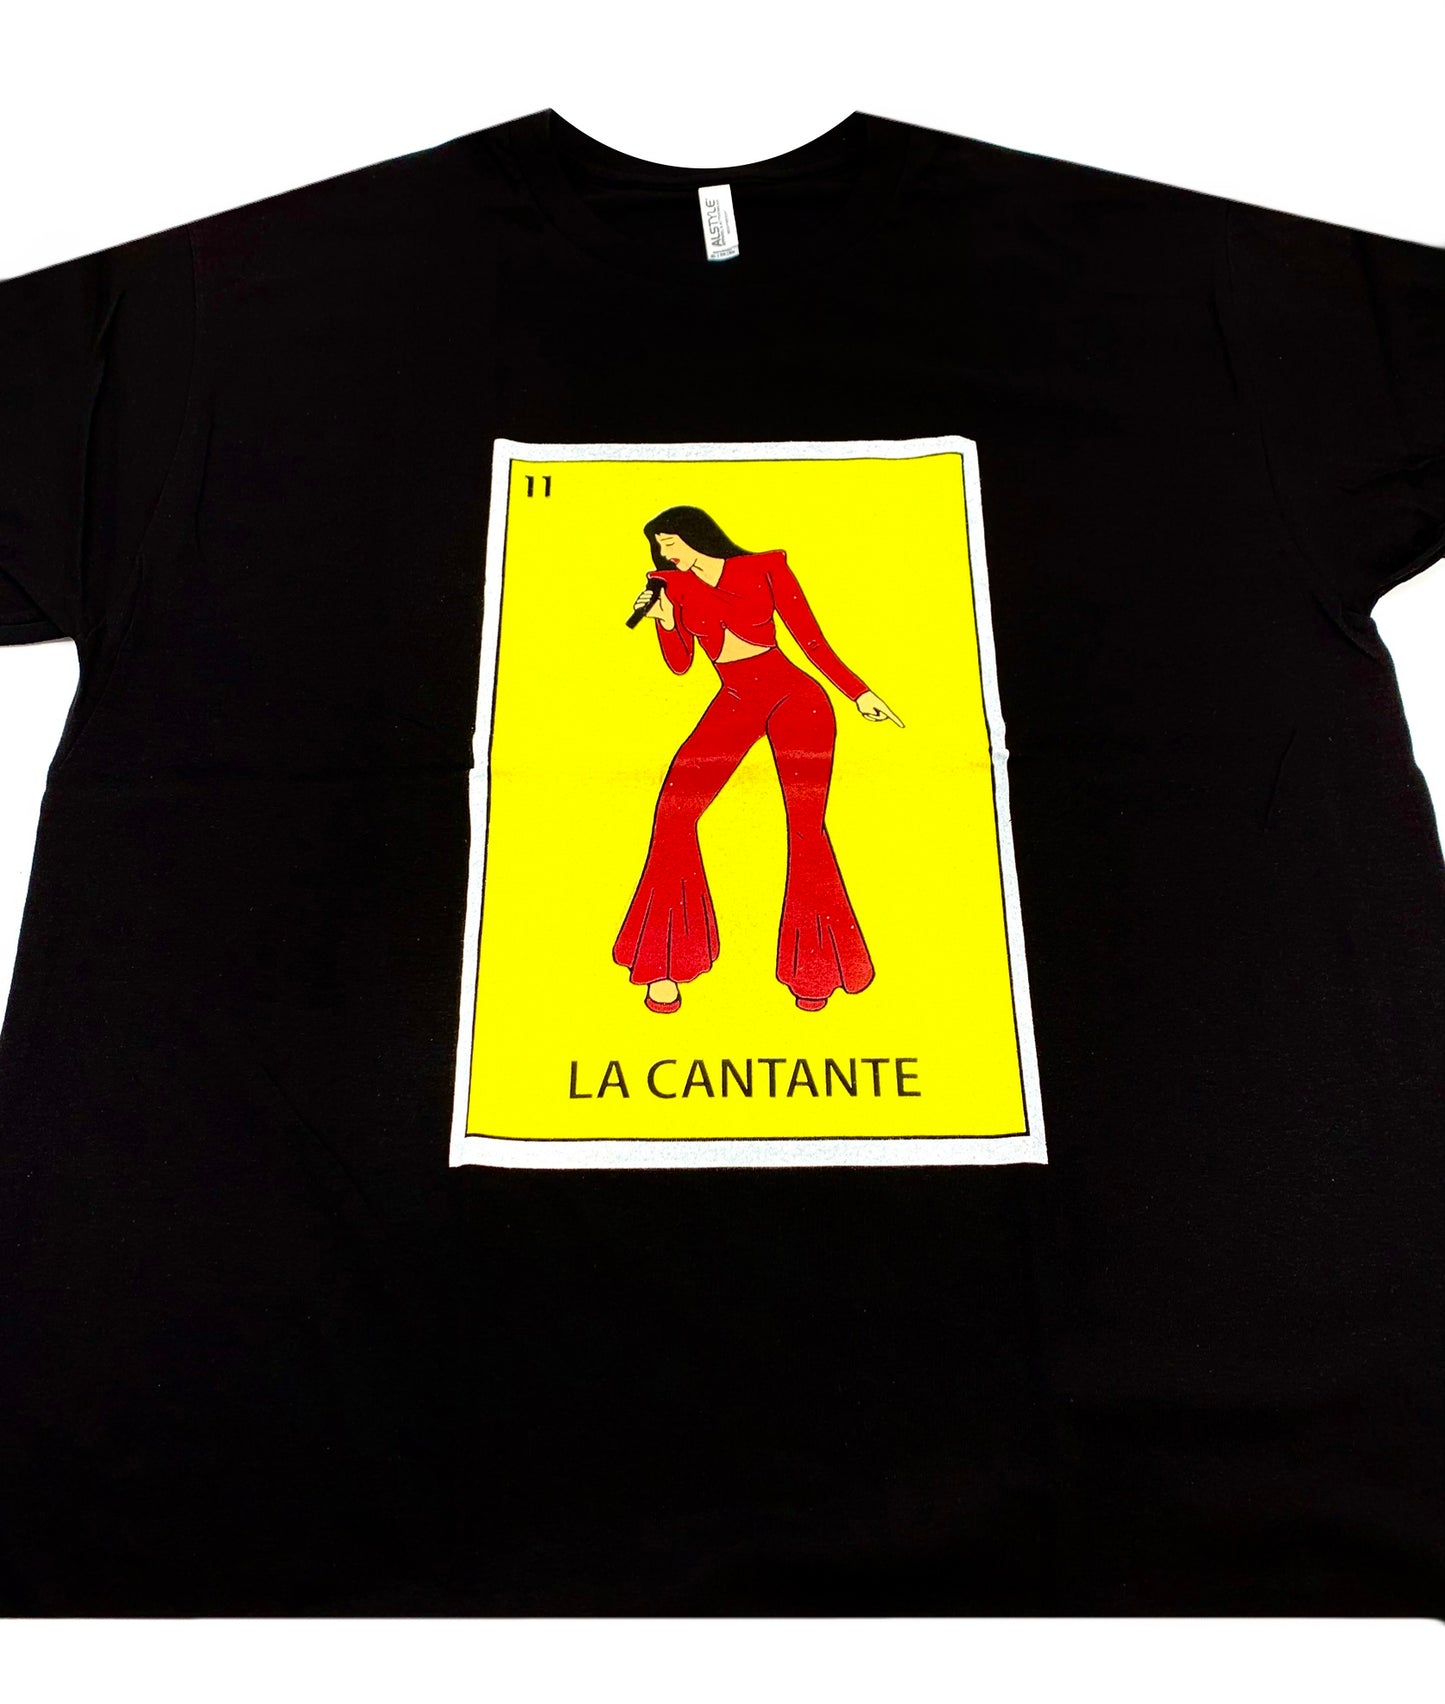 (12ct) Camisetas La Cantante $6.99 c/u